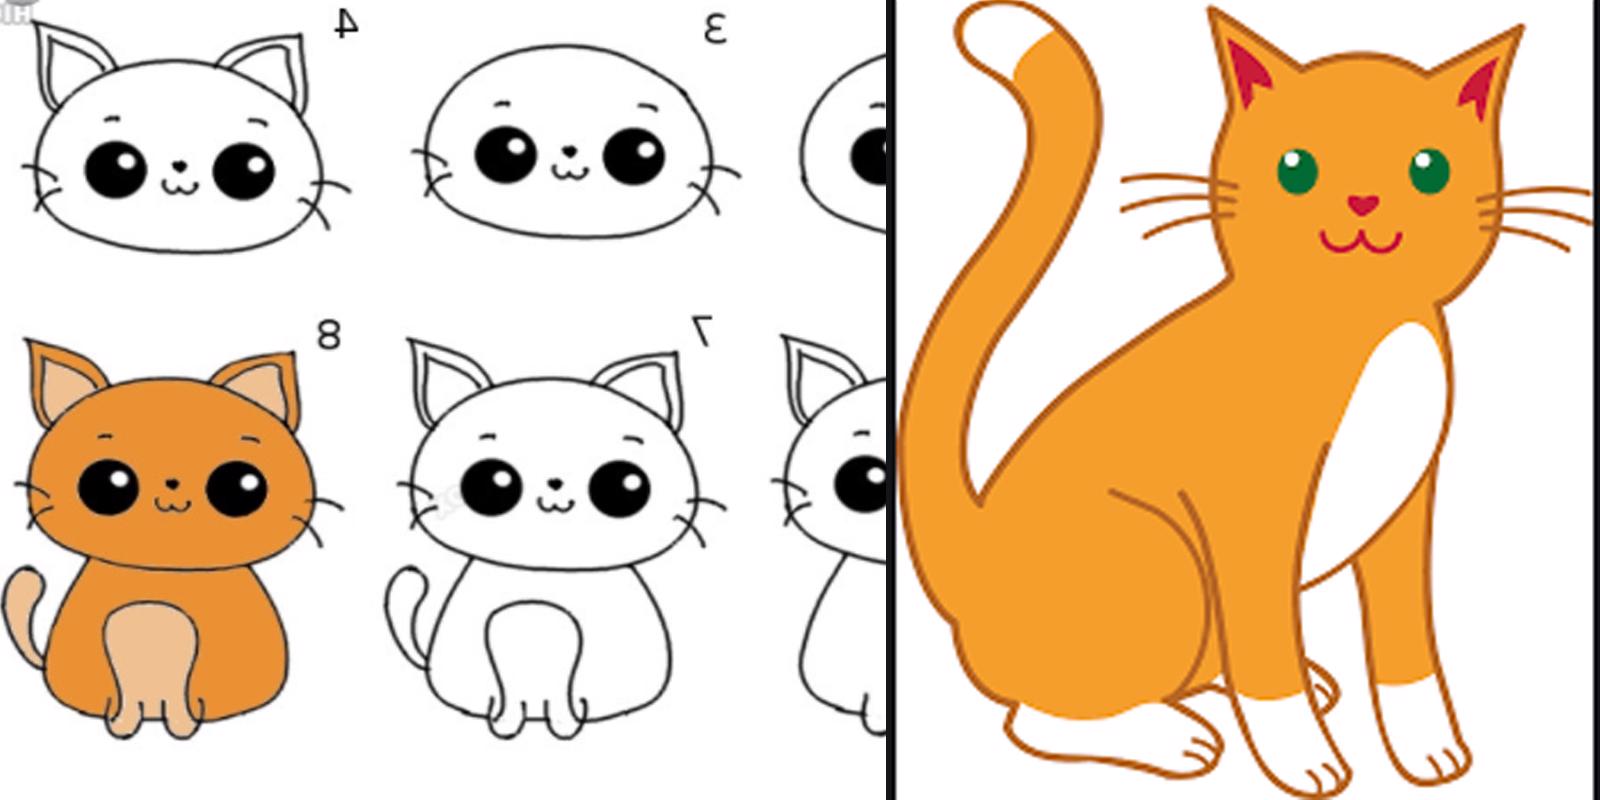 Como desenhar um Gato Fácil passo a passo para iniciantes